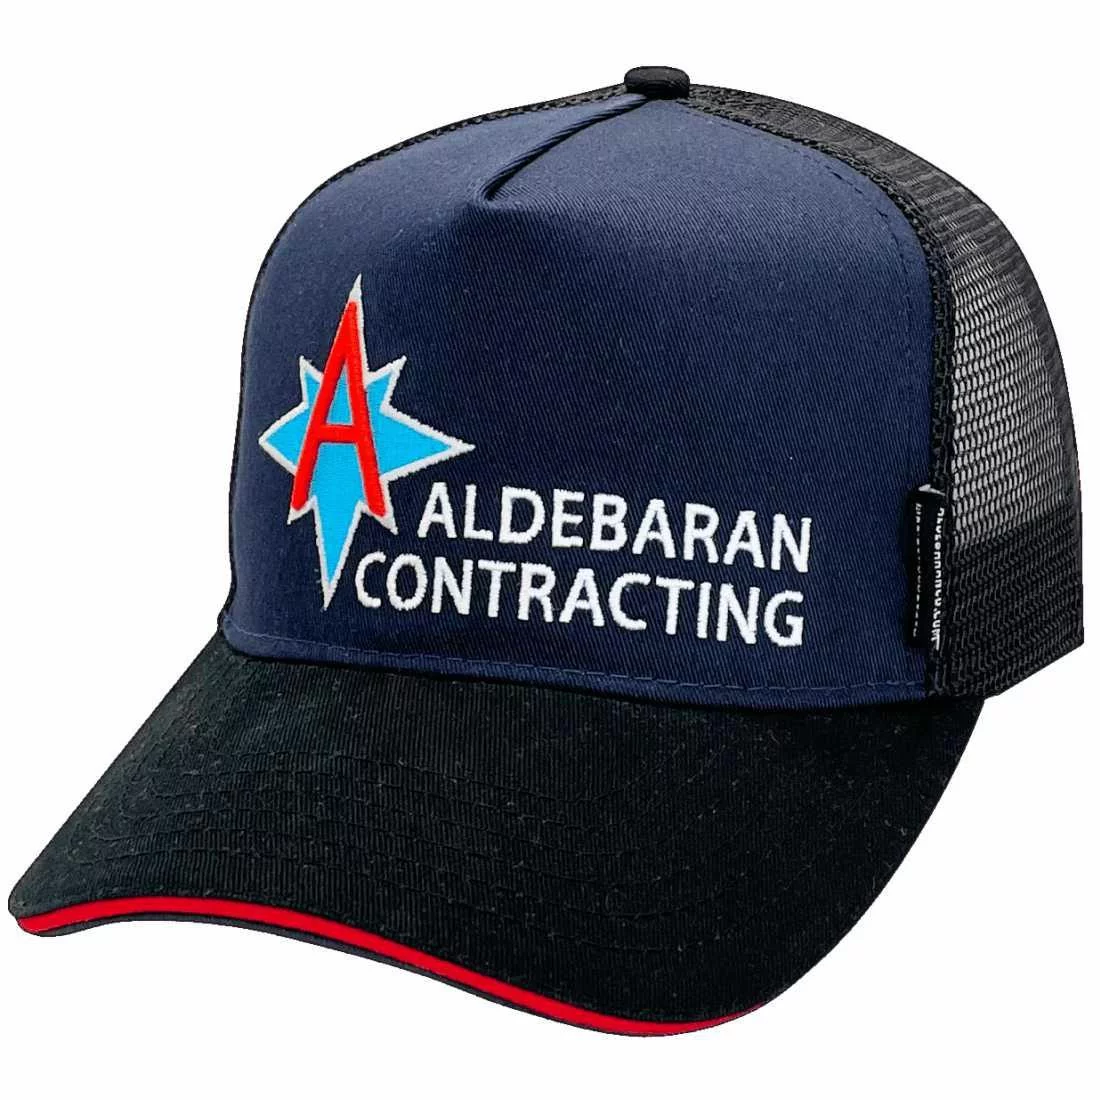 Aldebaran Construction NT Power Aussie Trucker Hat with Australian Headfit Crown size Navy Black Red